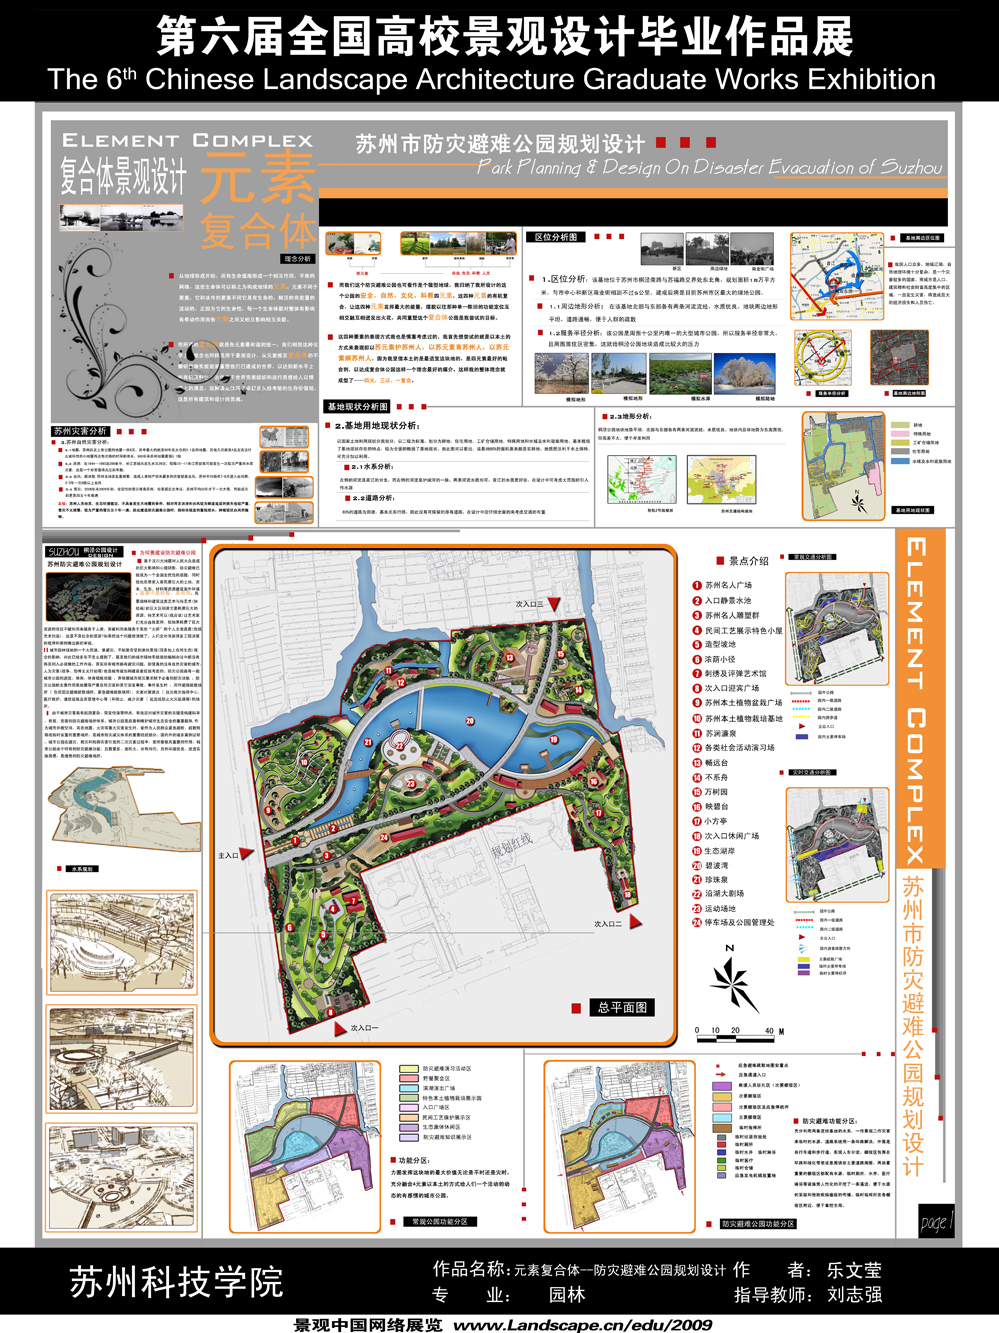 元素复合体——苏州市防灾避难公园规划设计-1